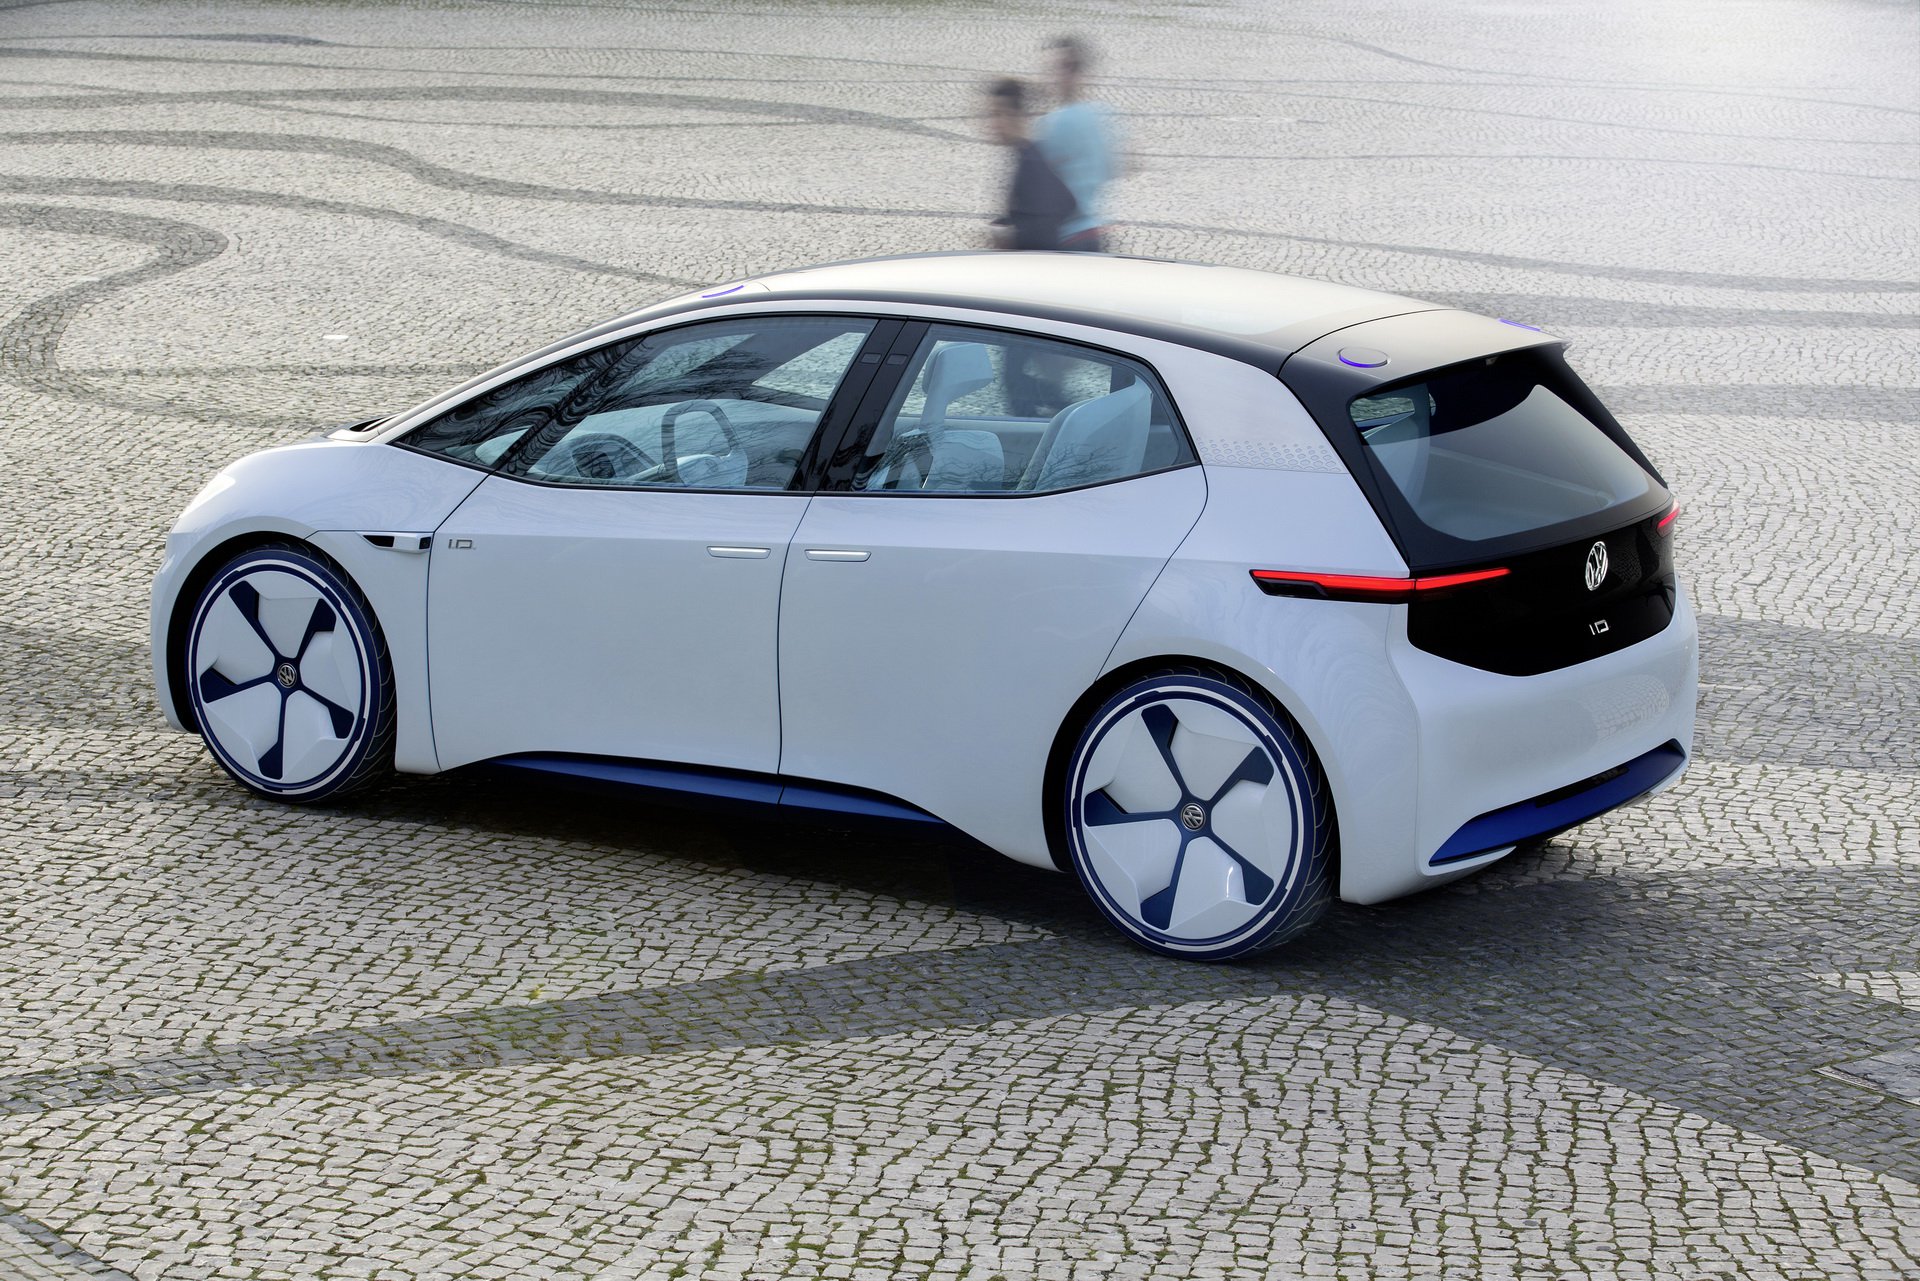 Olcso Elektromos Autot Tervez A Volkswagen Autostart